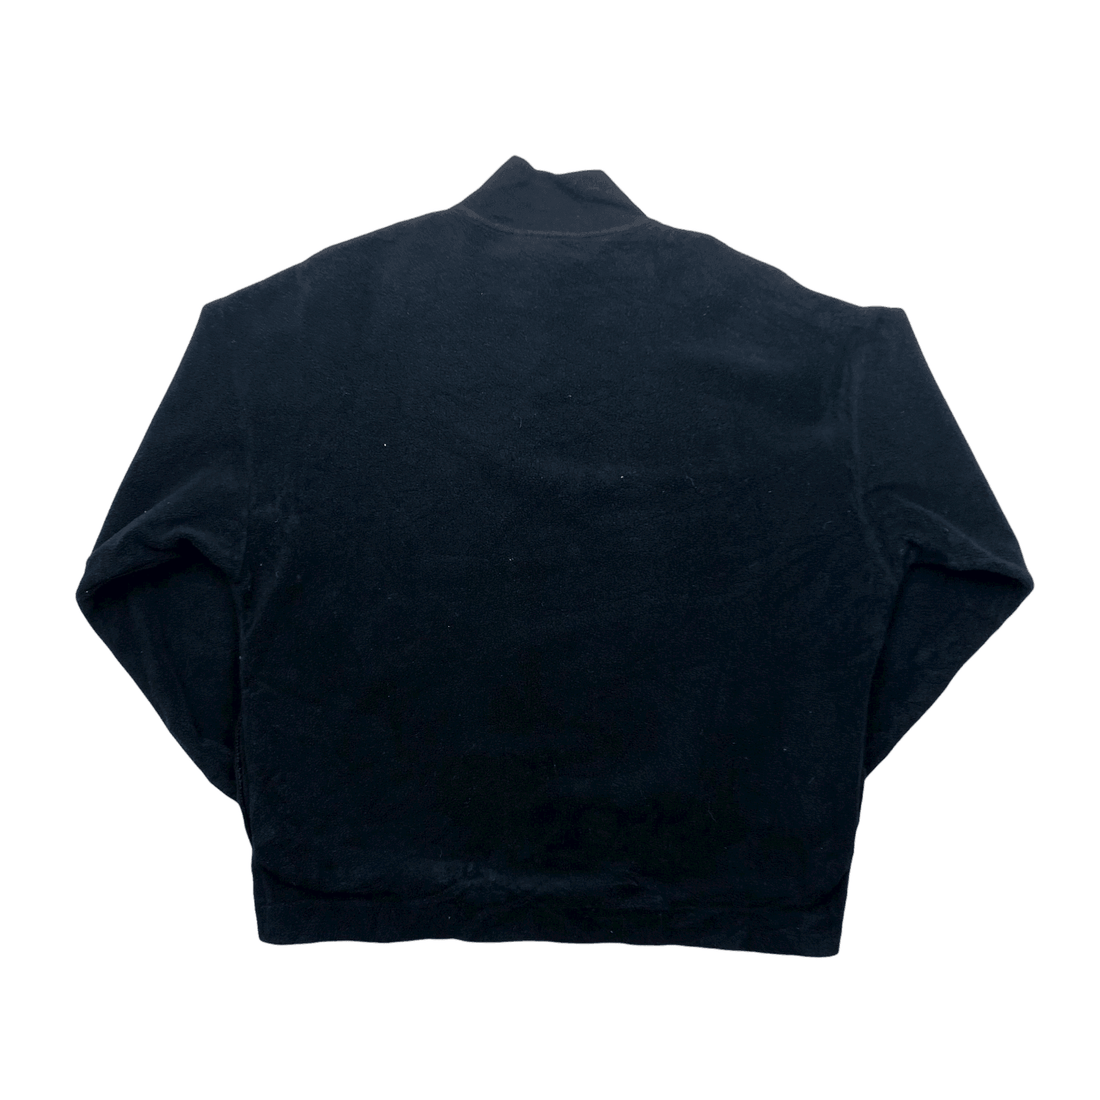 Vintage 90s Black Fila Ice Fall Spell-Out Fleece Sweatshirt - Large - The Streetwear Studio